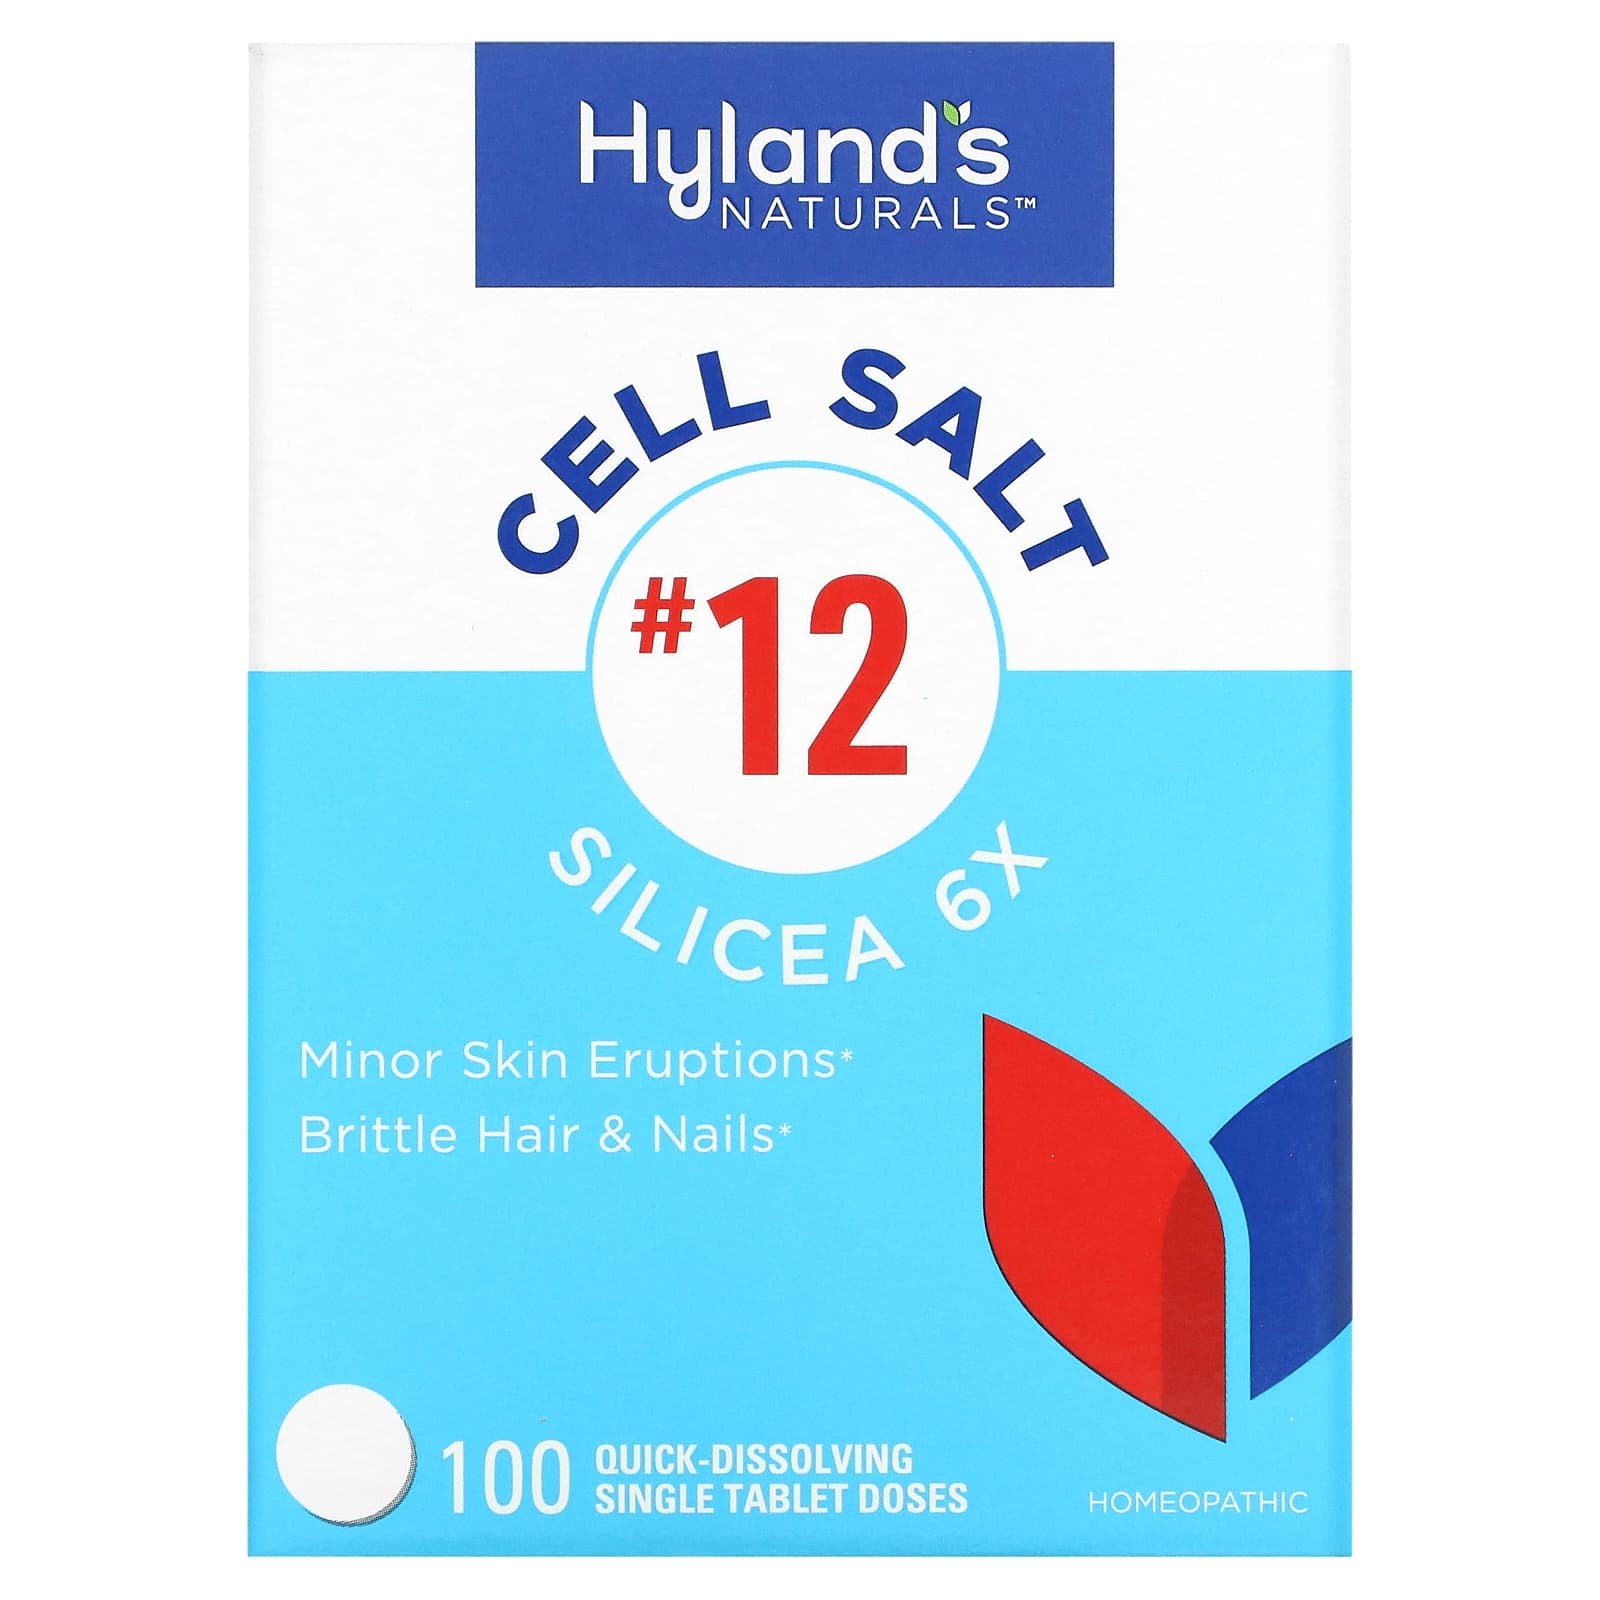 Клеточная Соль №12 / Силицея 6X Hyland's, 100 быстрорастворимых таблеток hyland s cell salt 4 ferrum phos 6x 100 быстрорастворимых одиночных таблеток